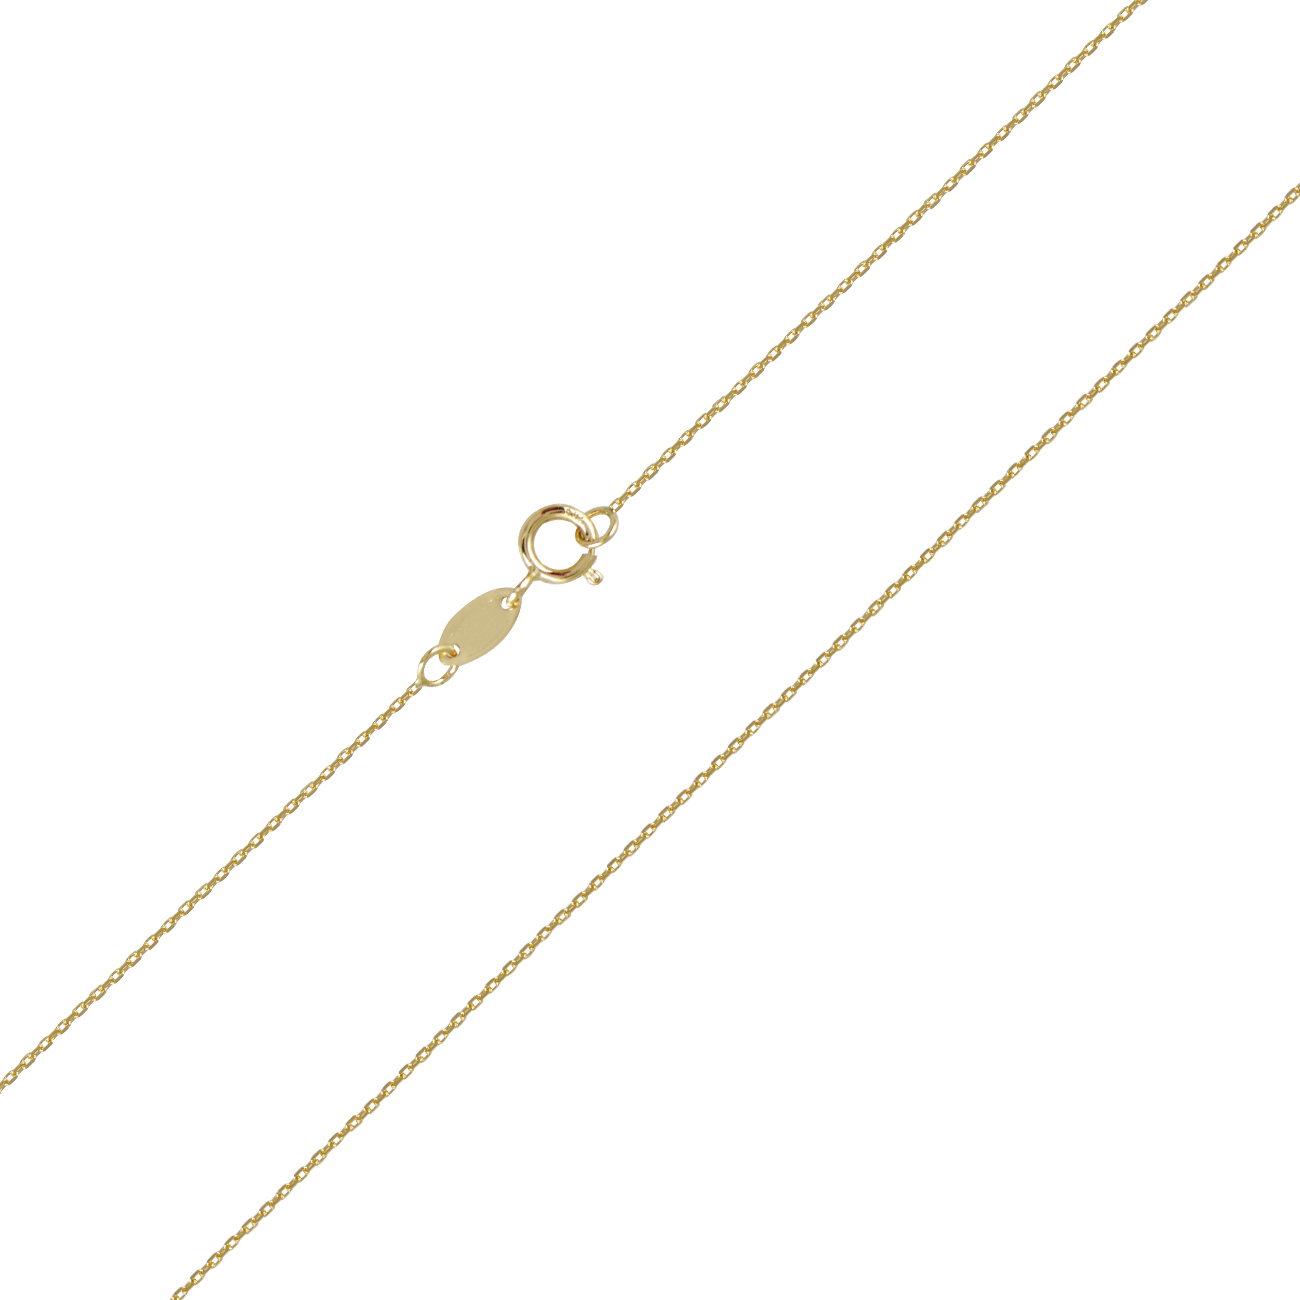 Χρυσή αλυσίδα λαιμού Γκρέκα 14 καρατίων. Ιδανική αλυσίδα για λεπτεπίλεπτους σταυρούς και μενταγιόν.